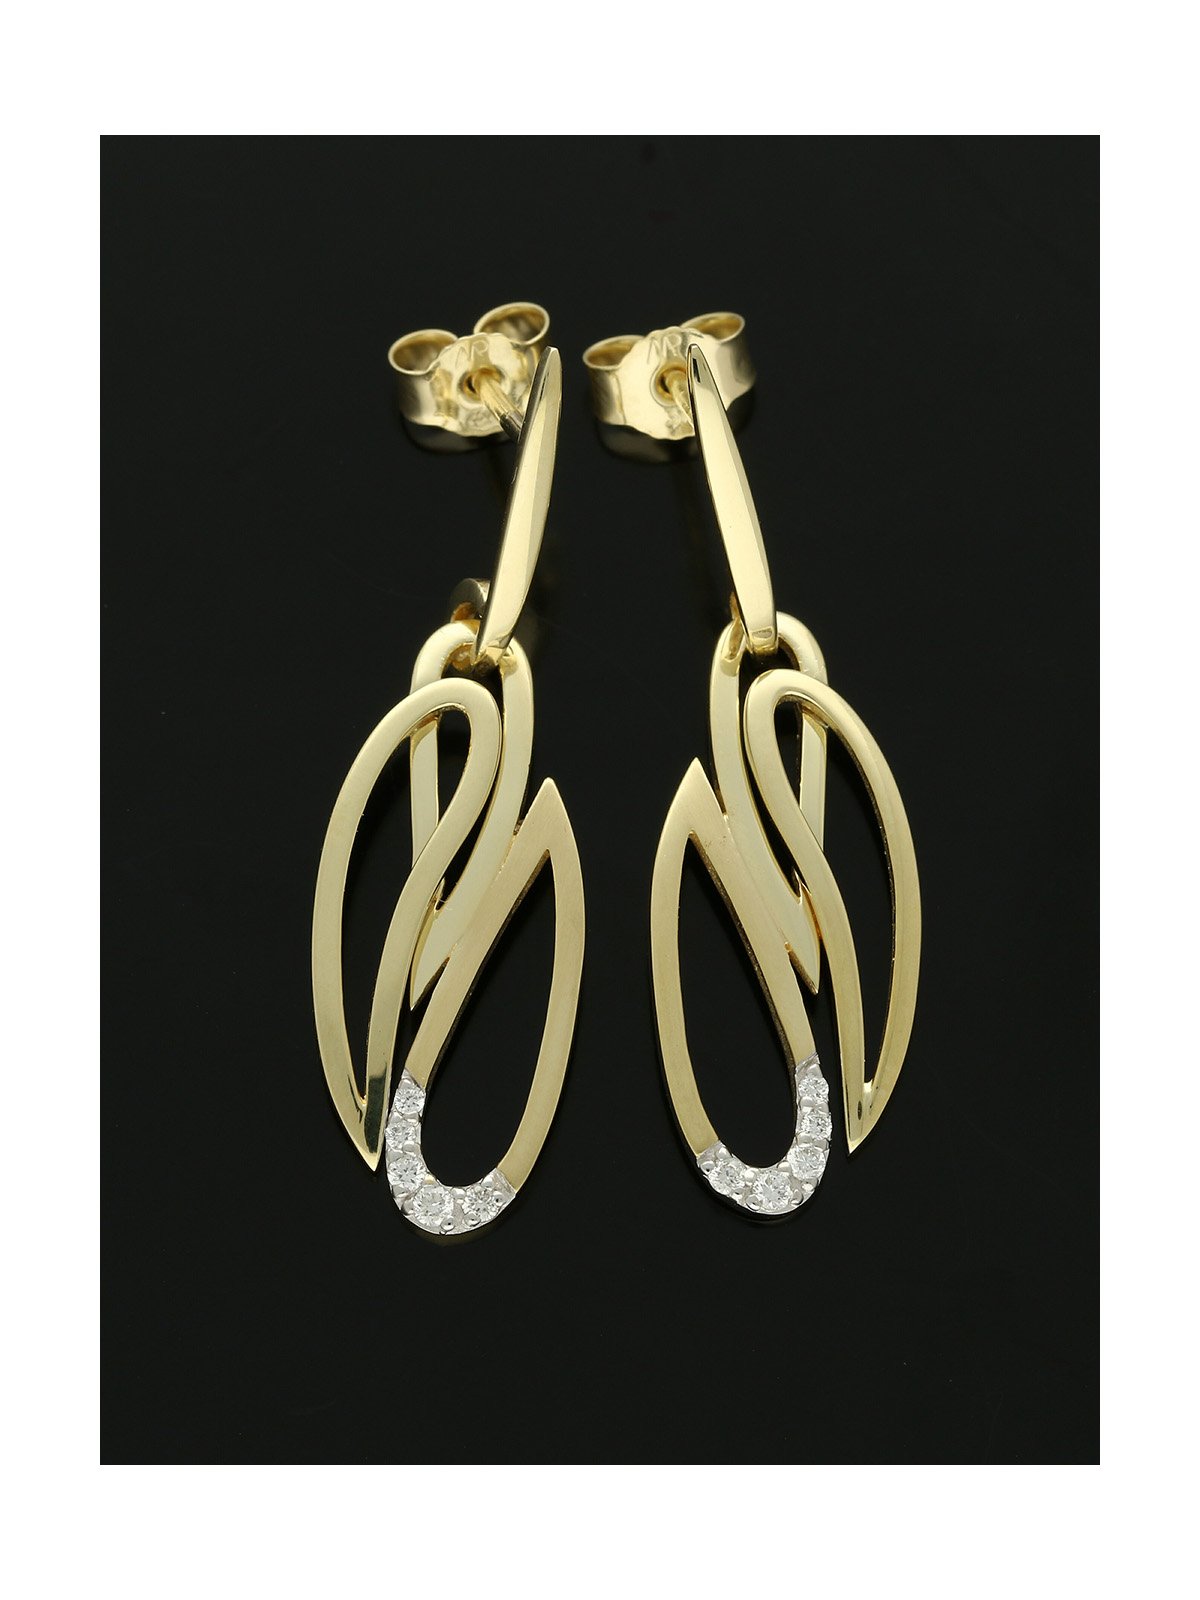 Fancy Pear Diamond Earrings 0.10ct in 9ct Yellow Gold